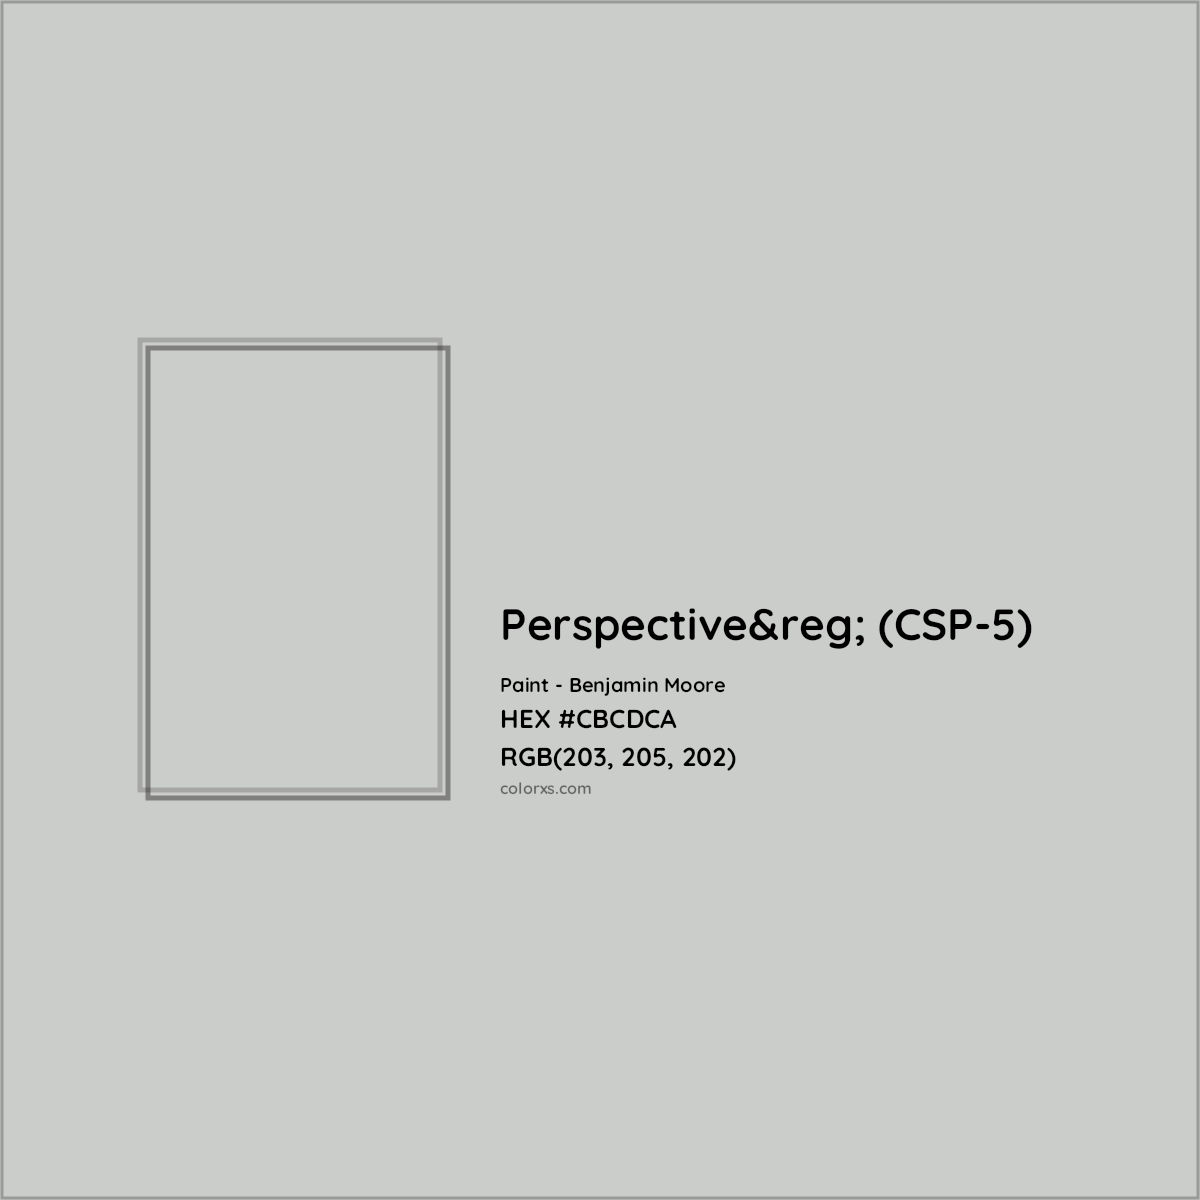 HEX #CBCDCA Perspective&reg; (CSP-5) Paint Benjamin Moore - Color Code